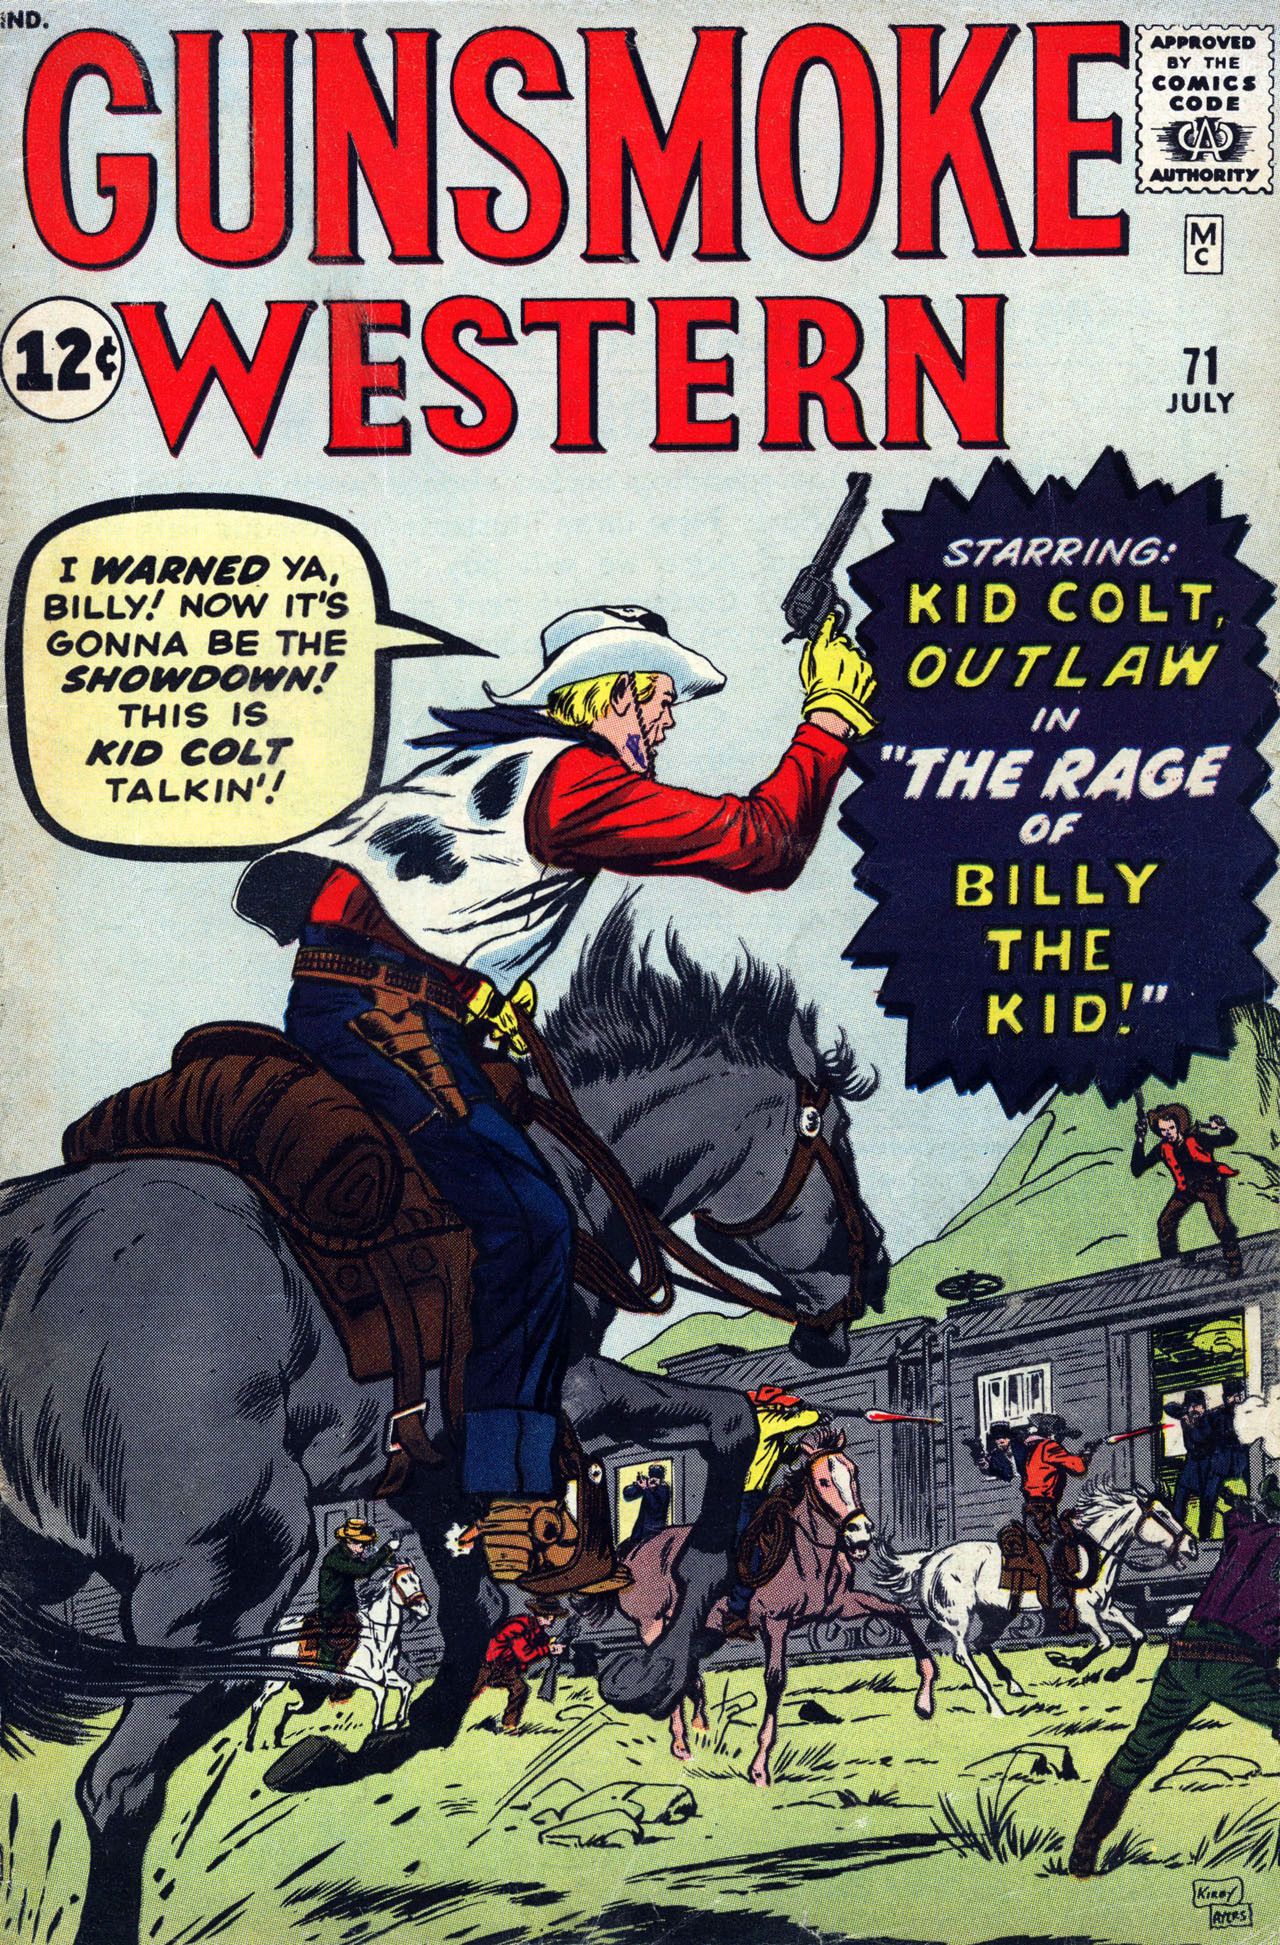 Read online Gunsmoke Western comic -  Issue #71 - 1